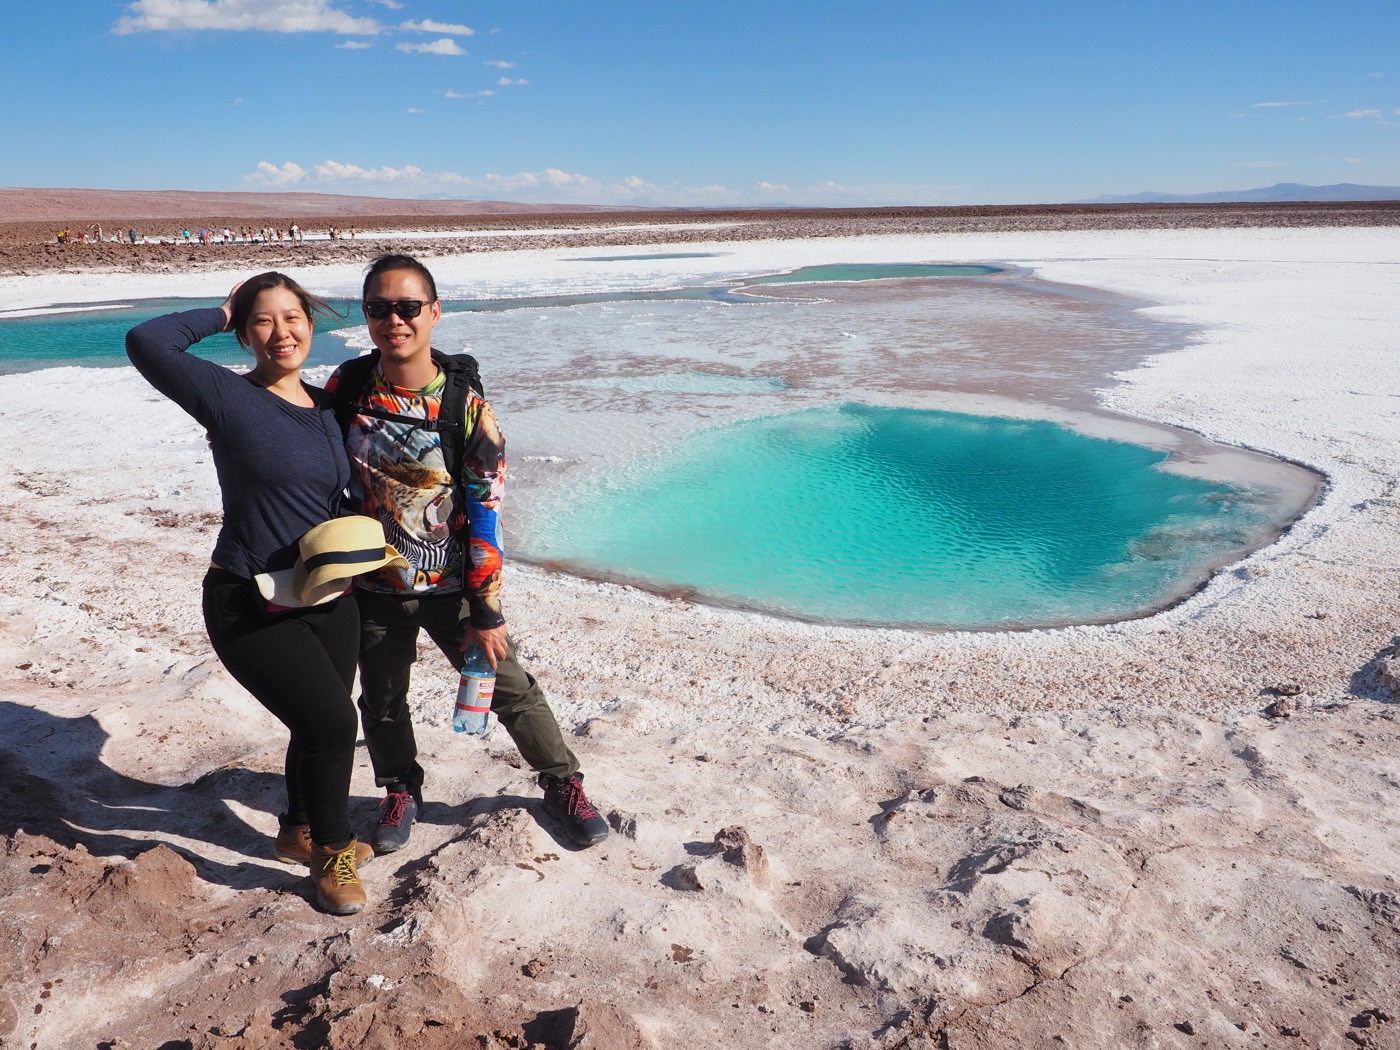 阿塔卡馬景點 Hidden Lagoon 鹽漠中的絕美藍色潟湖 Atacama 沙漠最推薦行程之一 - 一口冒險 Bitesized Adventure